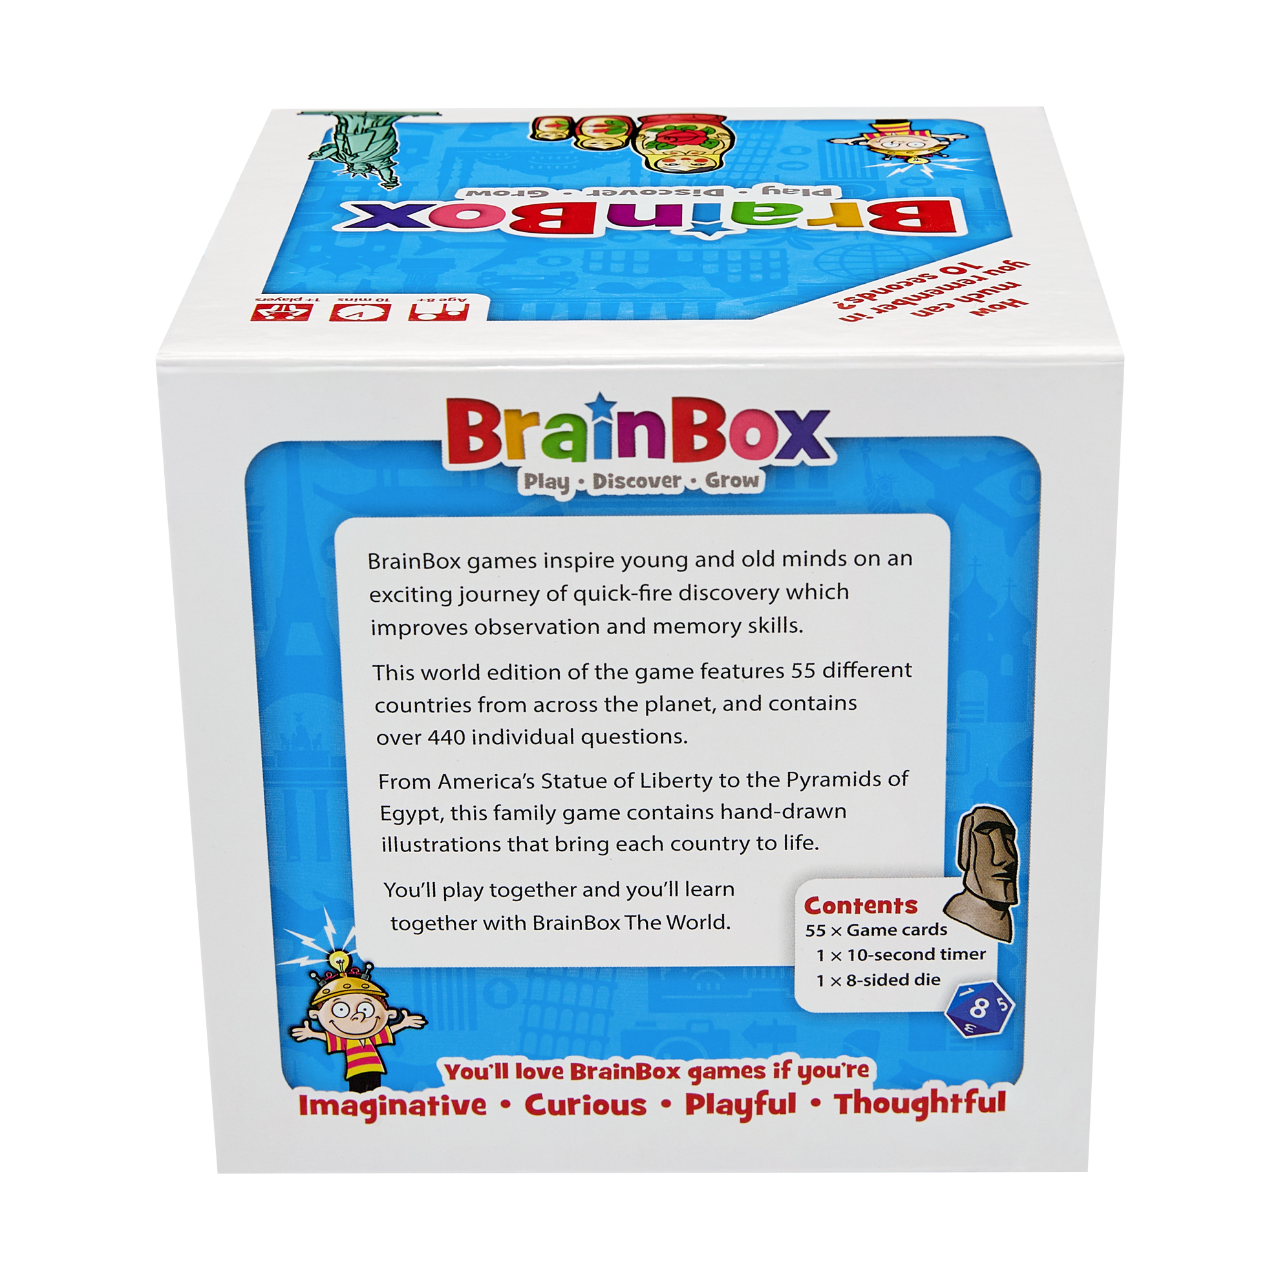 Brain Box Games - The World - Card Game